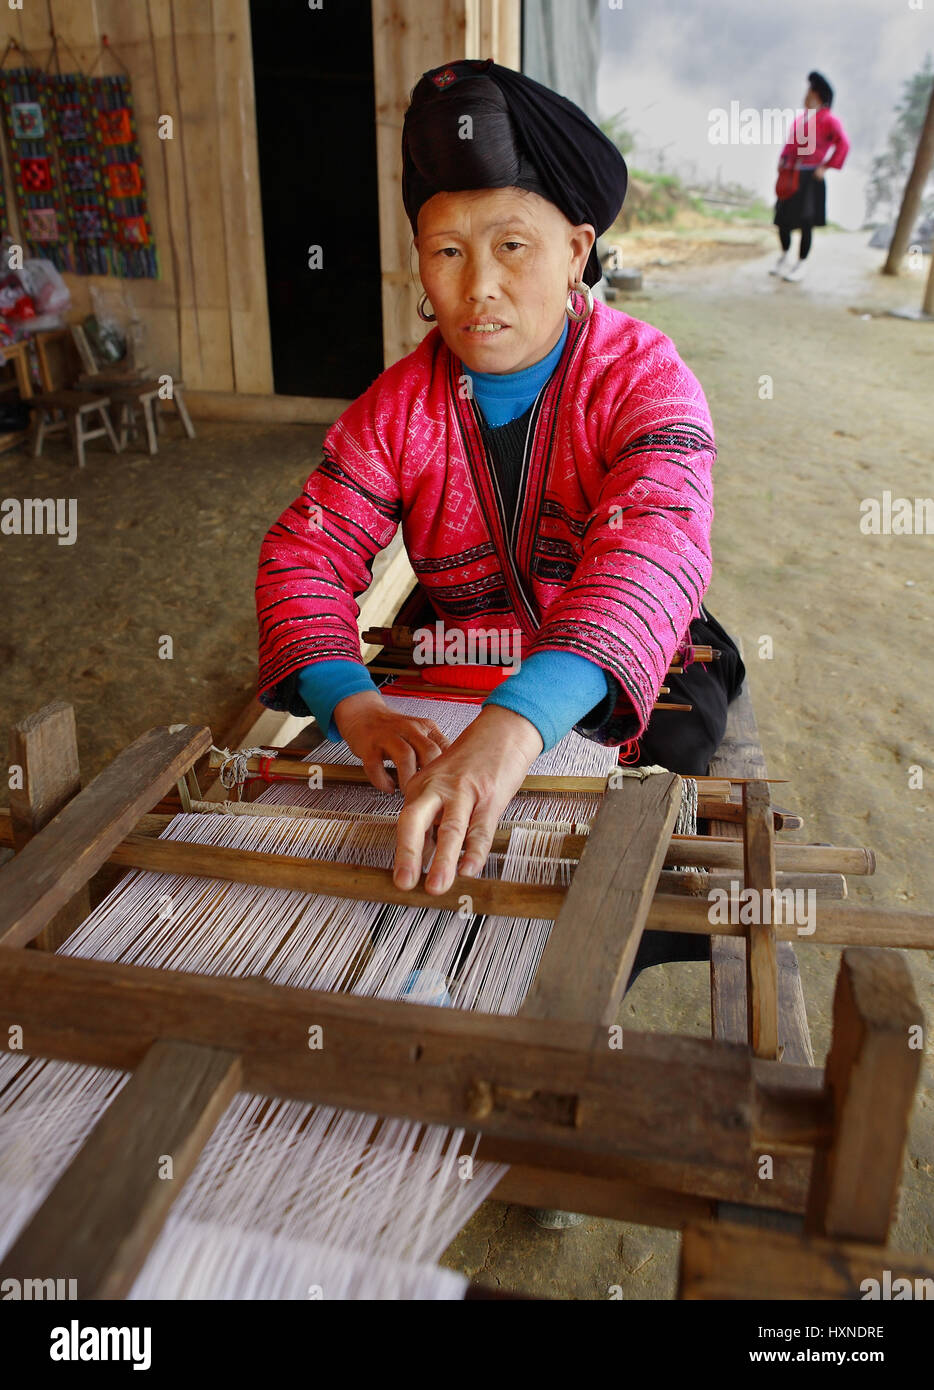 Provinz GUANGXI, CHINA - APRIL 4: Frau roten Yao Nationalität, ethnische Minderheiten in China, webt auf einem alten Webstuhl Holz, 4. April 2010. Xia Stockfoto